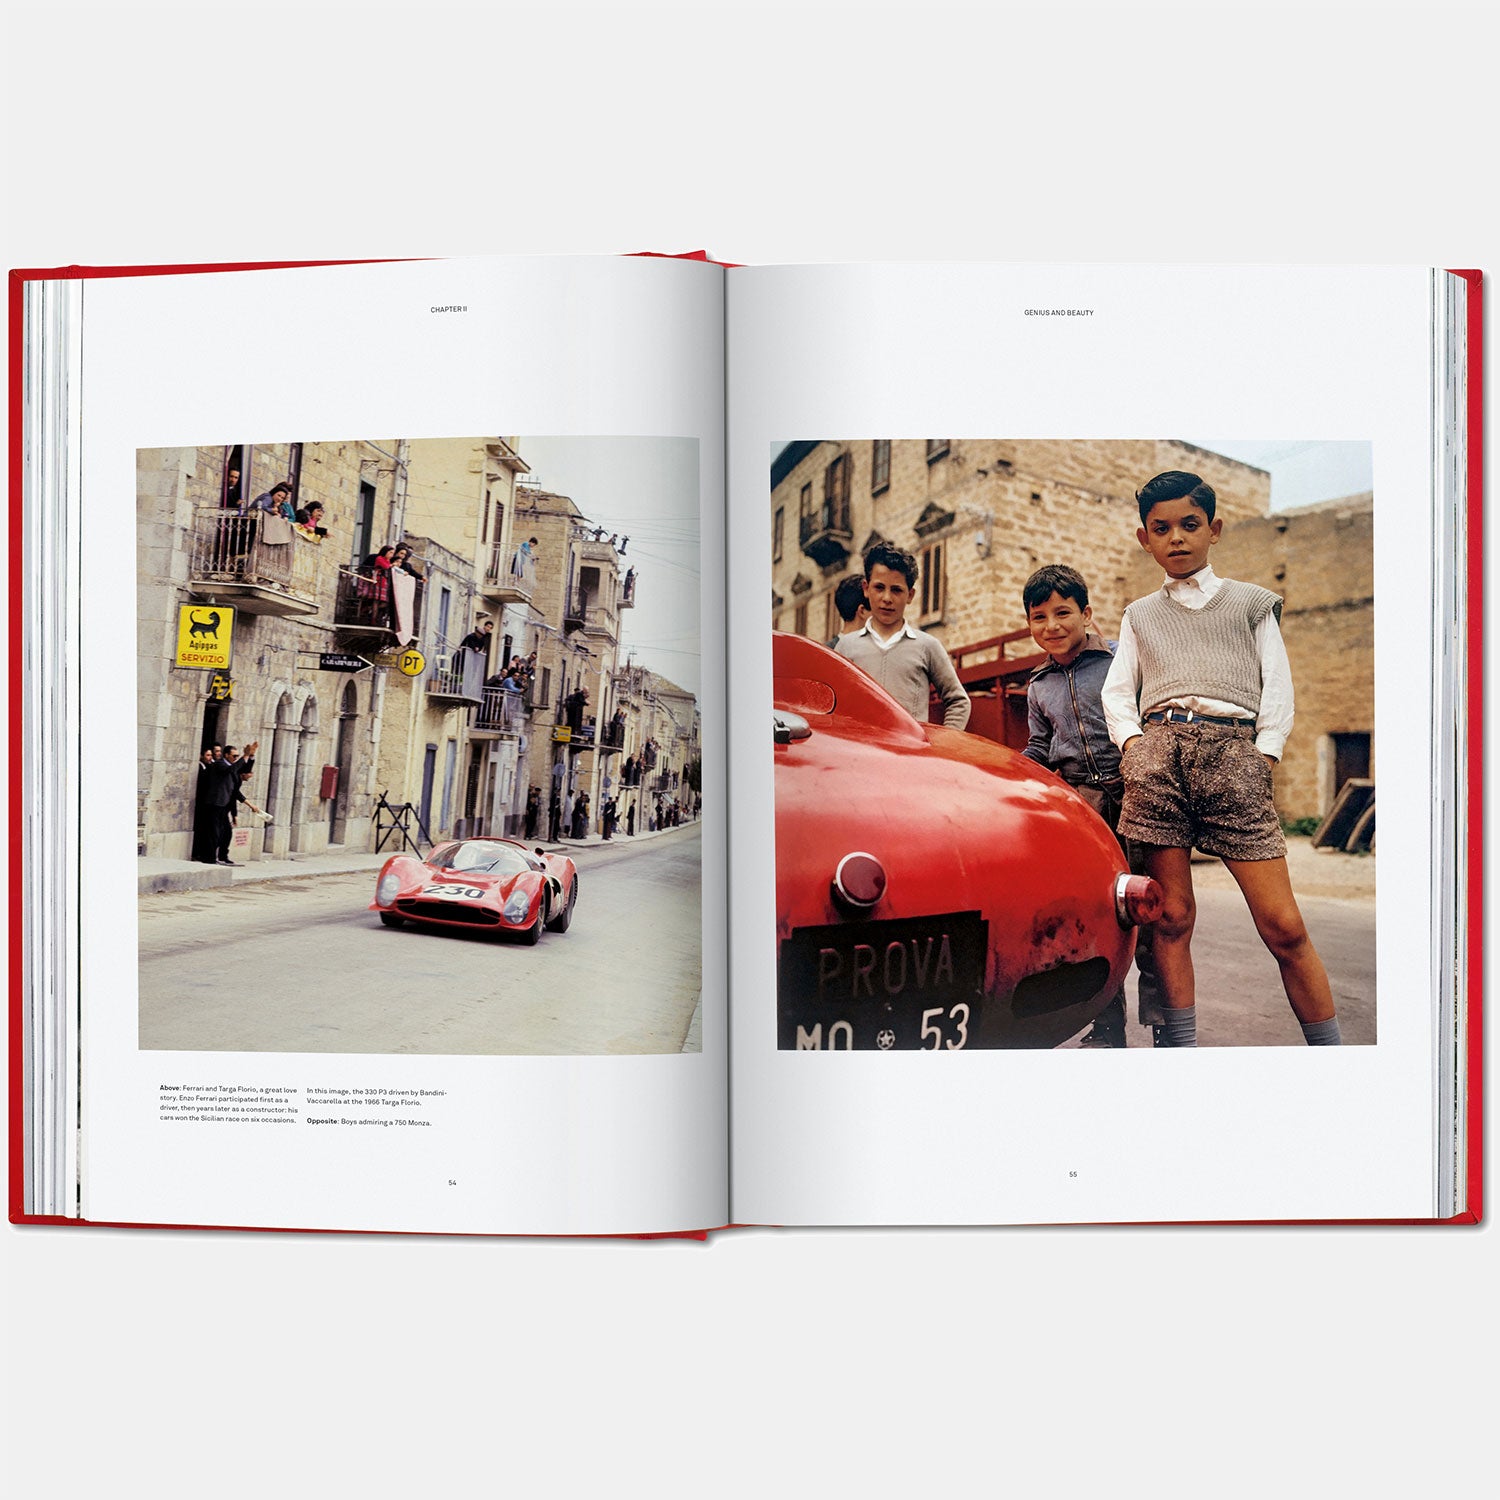 Ferrari taschen book and bookstand